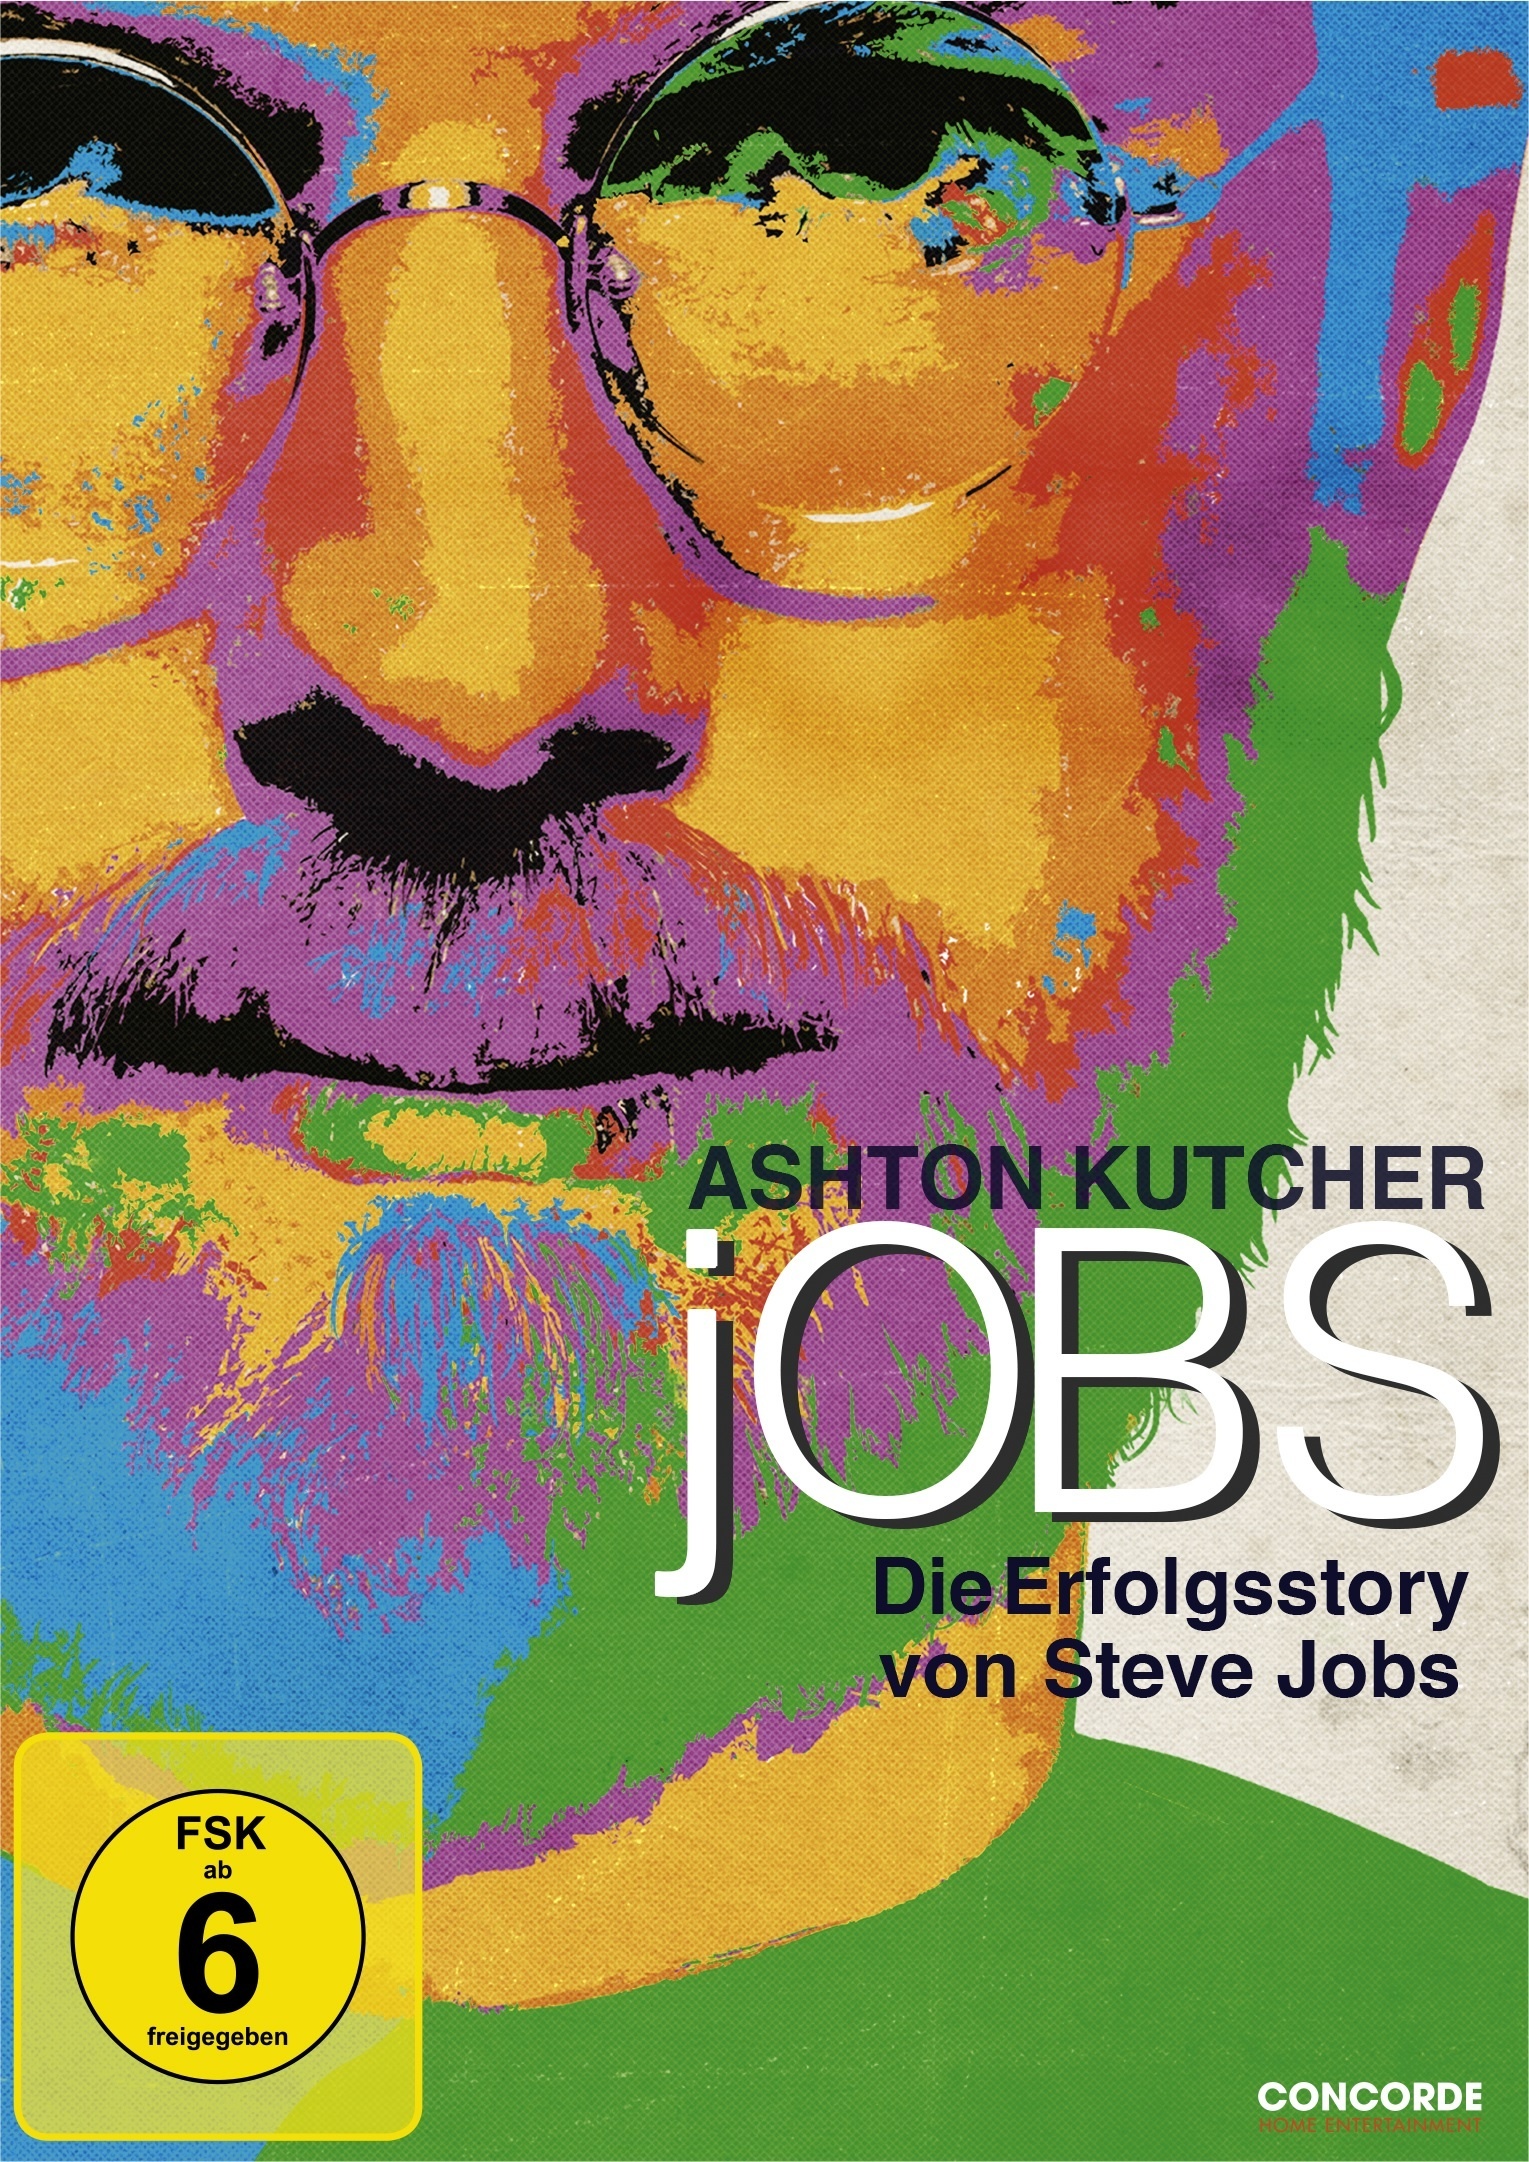 Jobs (DVD)